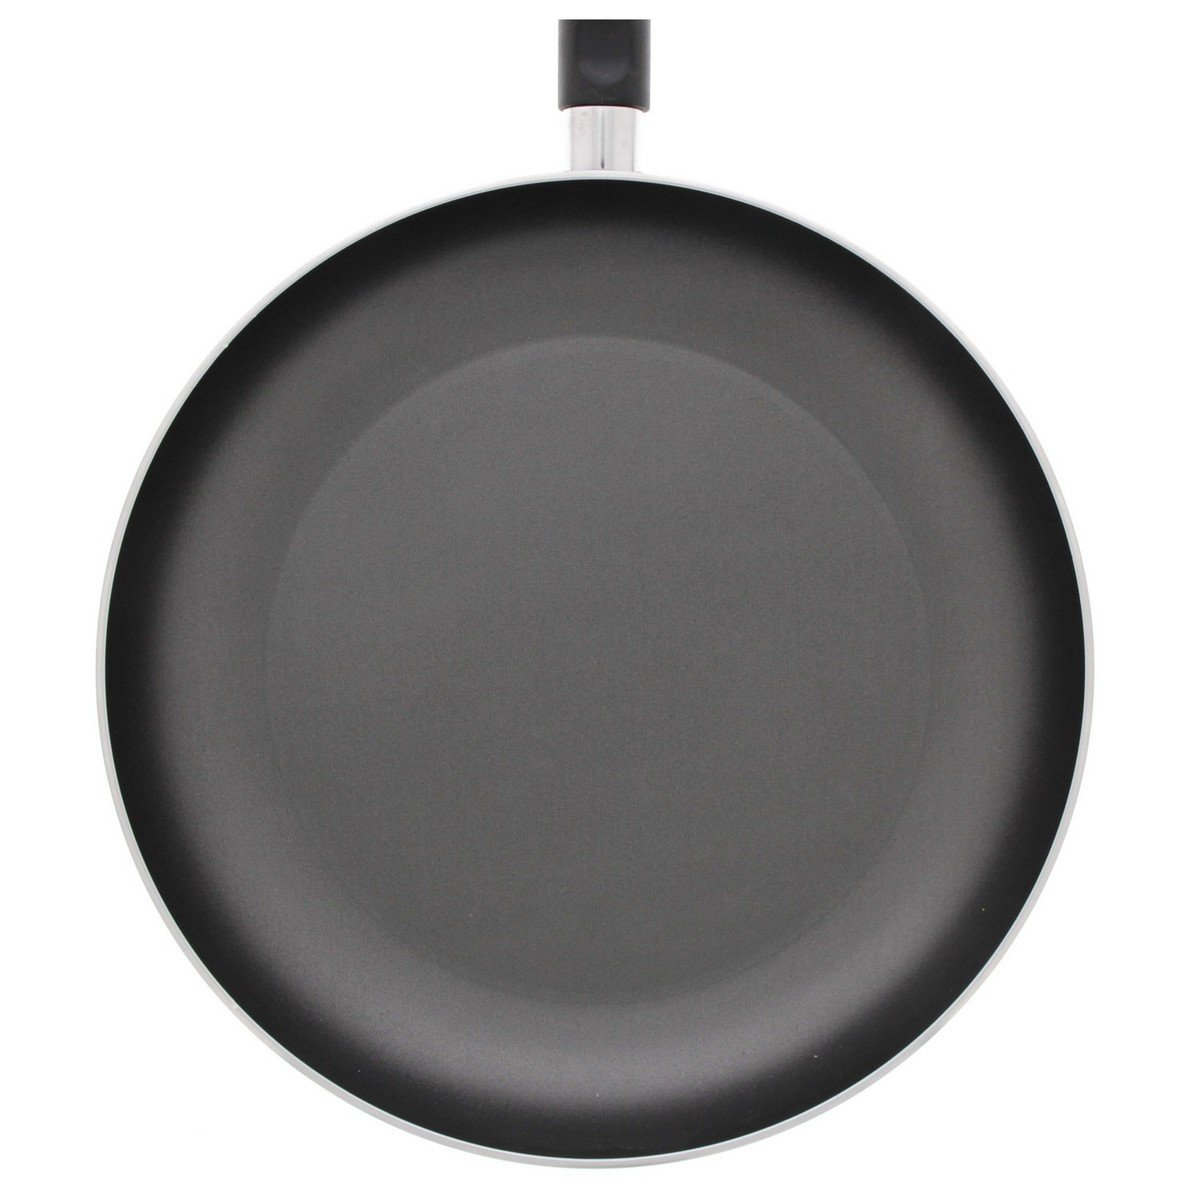 Prestige Classique Non-Stick Fry Pan, 20 cm